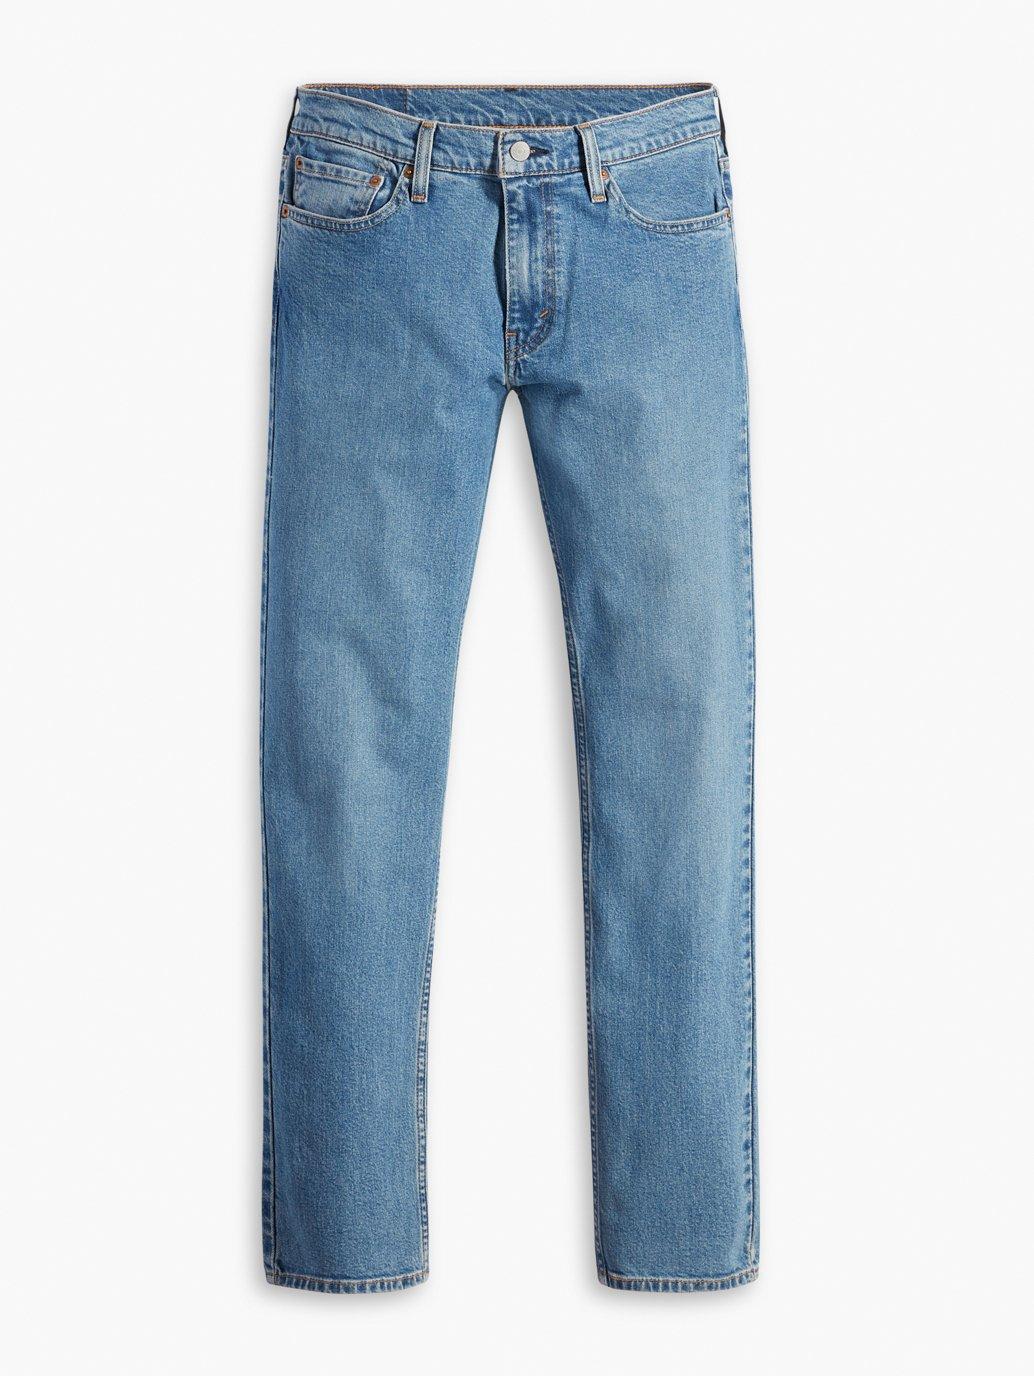 Buy Levi's® Men's 511™ Slim Jeans | Levi’s® Official Online Store MY